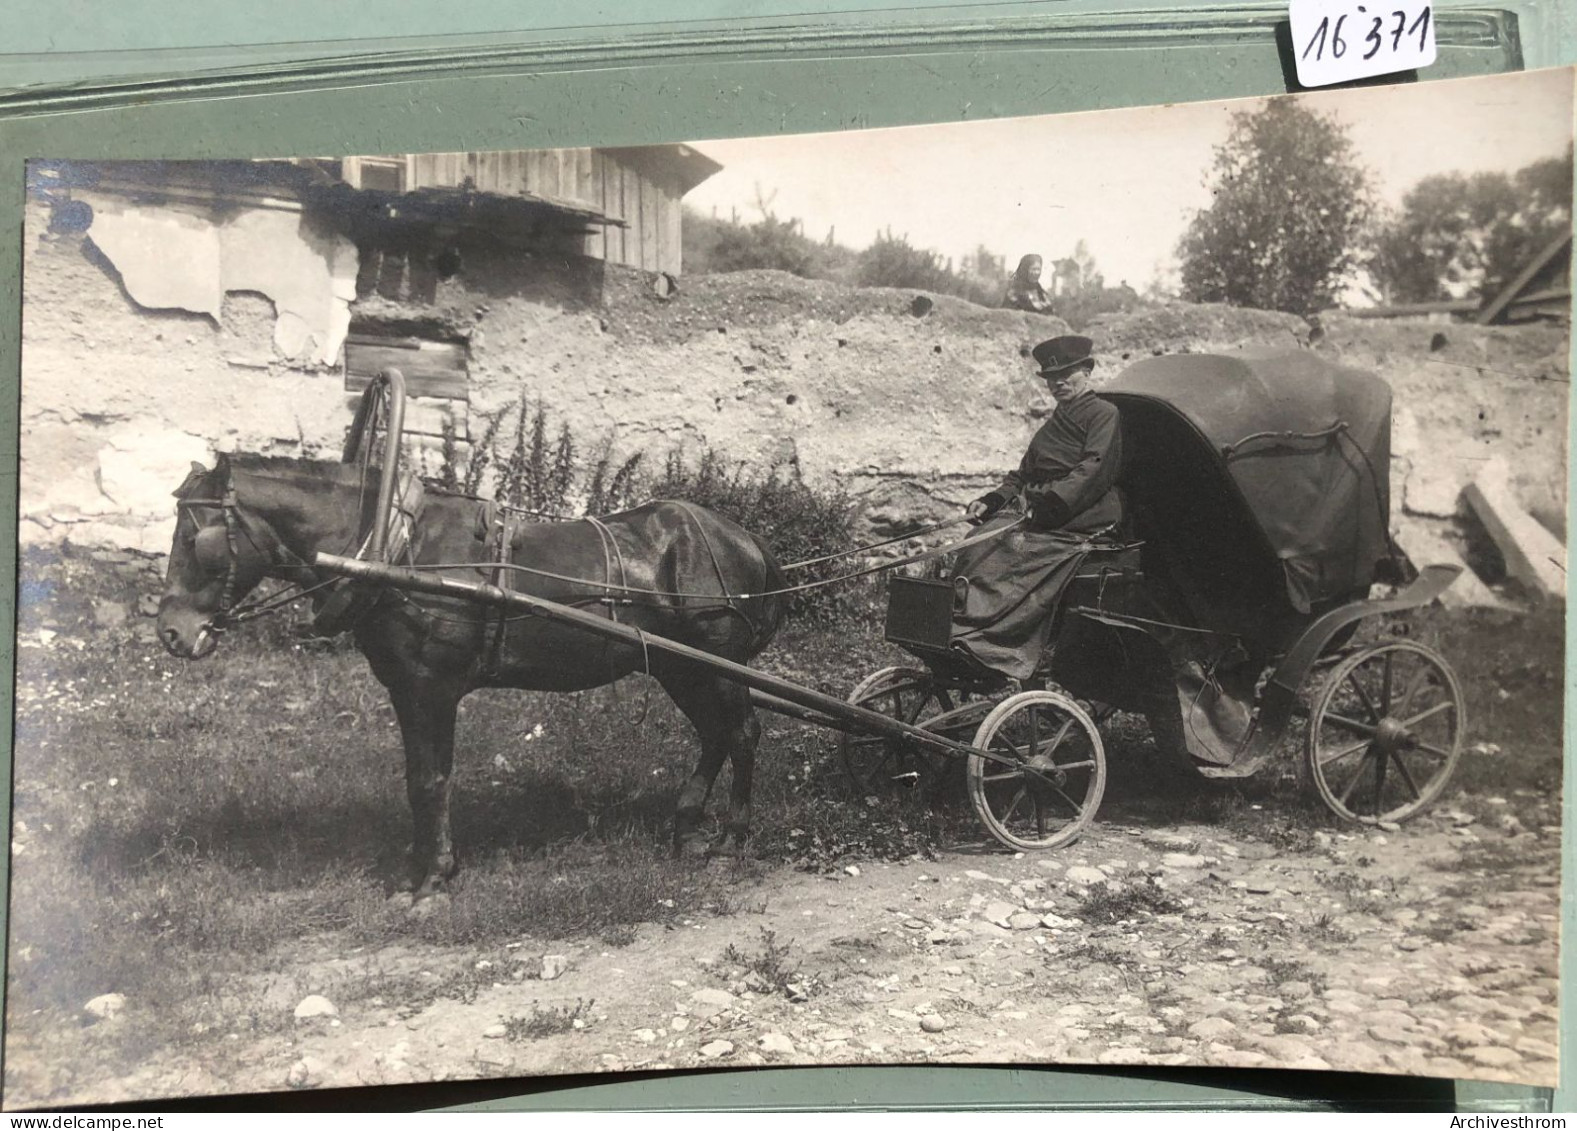 Molétai - Maljaty : Ca 1917 Conducteur De « Taxi » Cabriolet Attelé à Un Cheval (16'371) - Lithuania